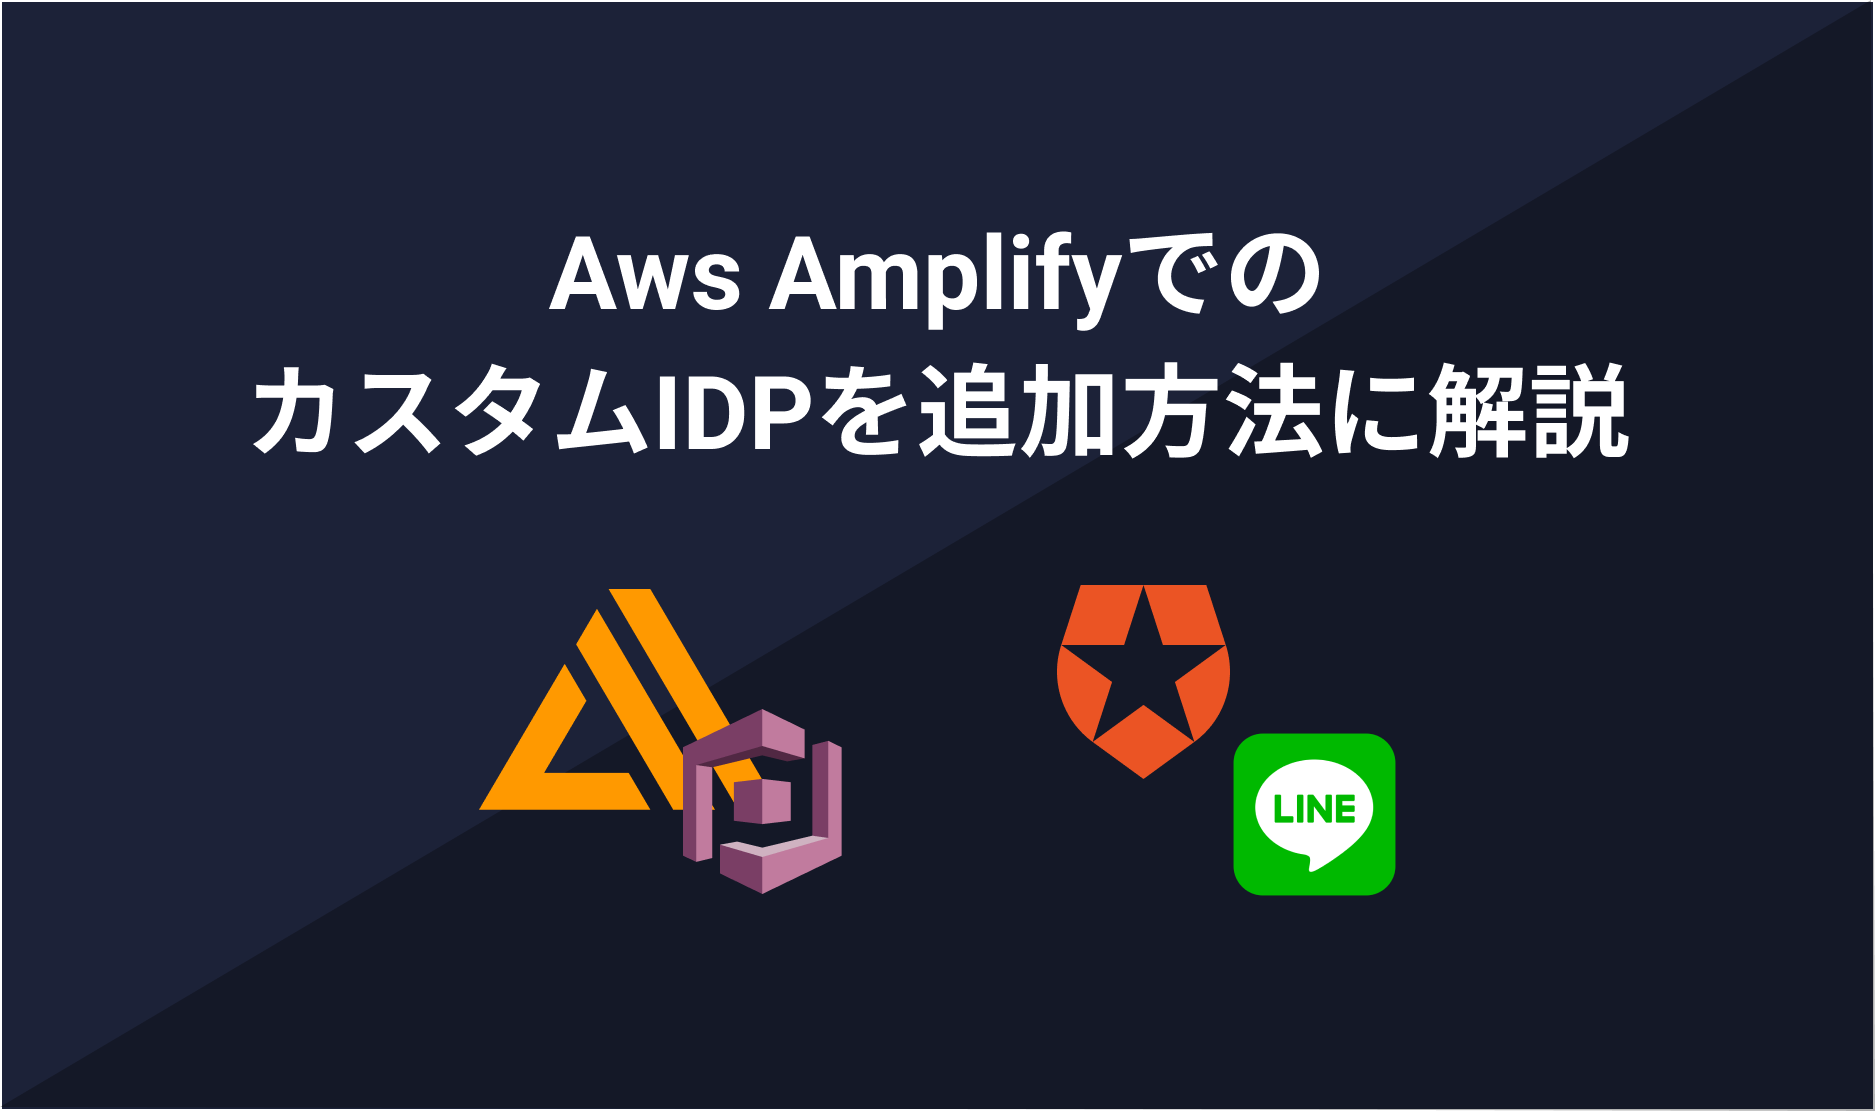 最新のAWS AmplifyOIDC Providerの追加方法はこれ！Line、Auth0などの外部認証プロバイダーの追加をAmplifyで対応